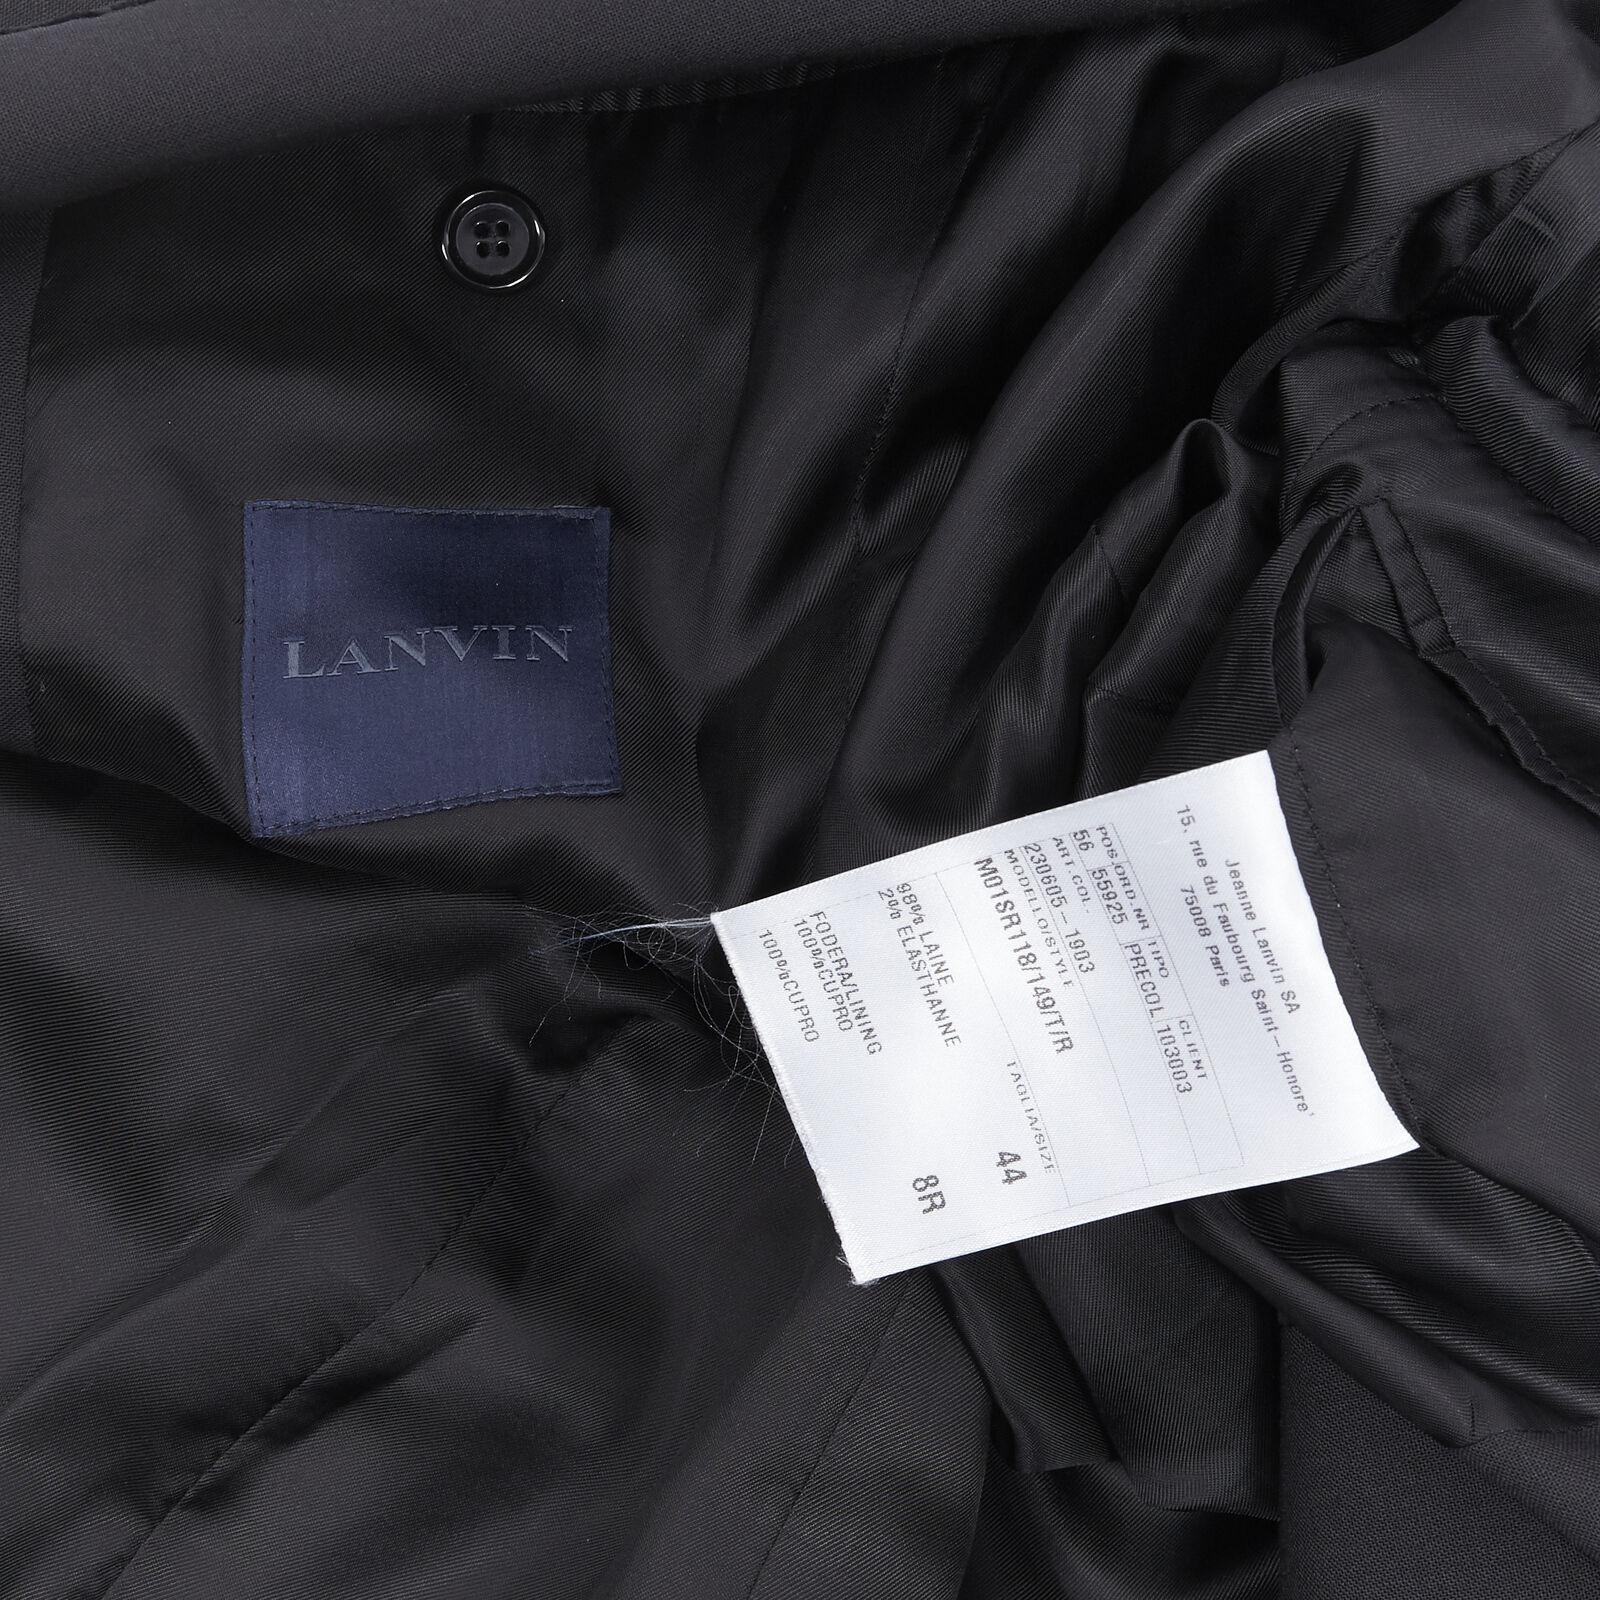 LANVIN ALBER ELBAZ wool blend black velvet peak lapel formal blazer jacket FR44 For Sale 6